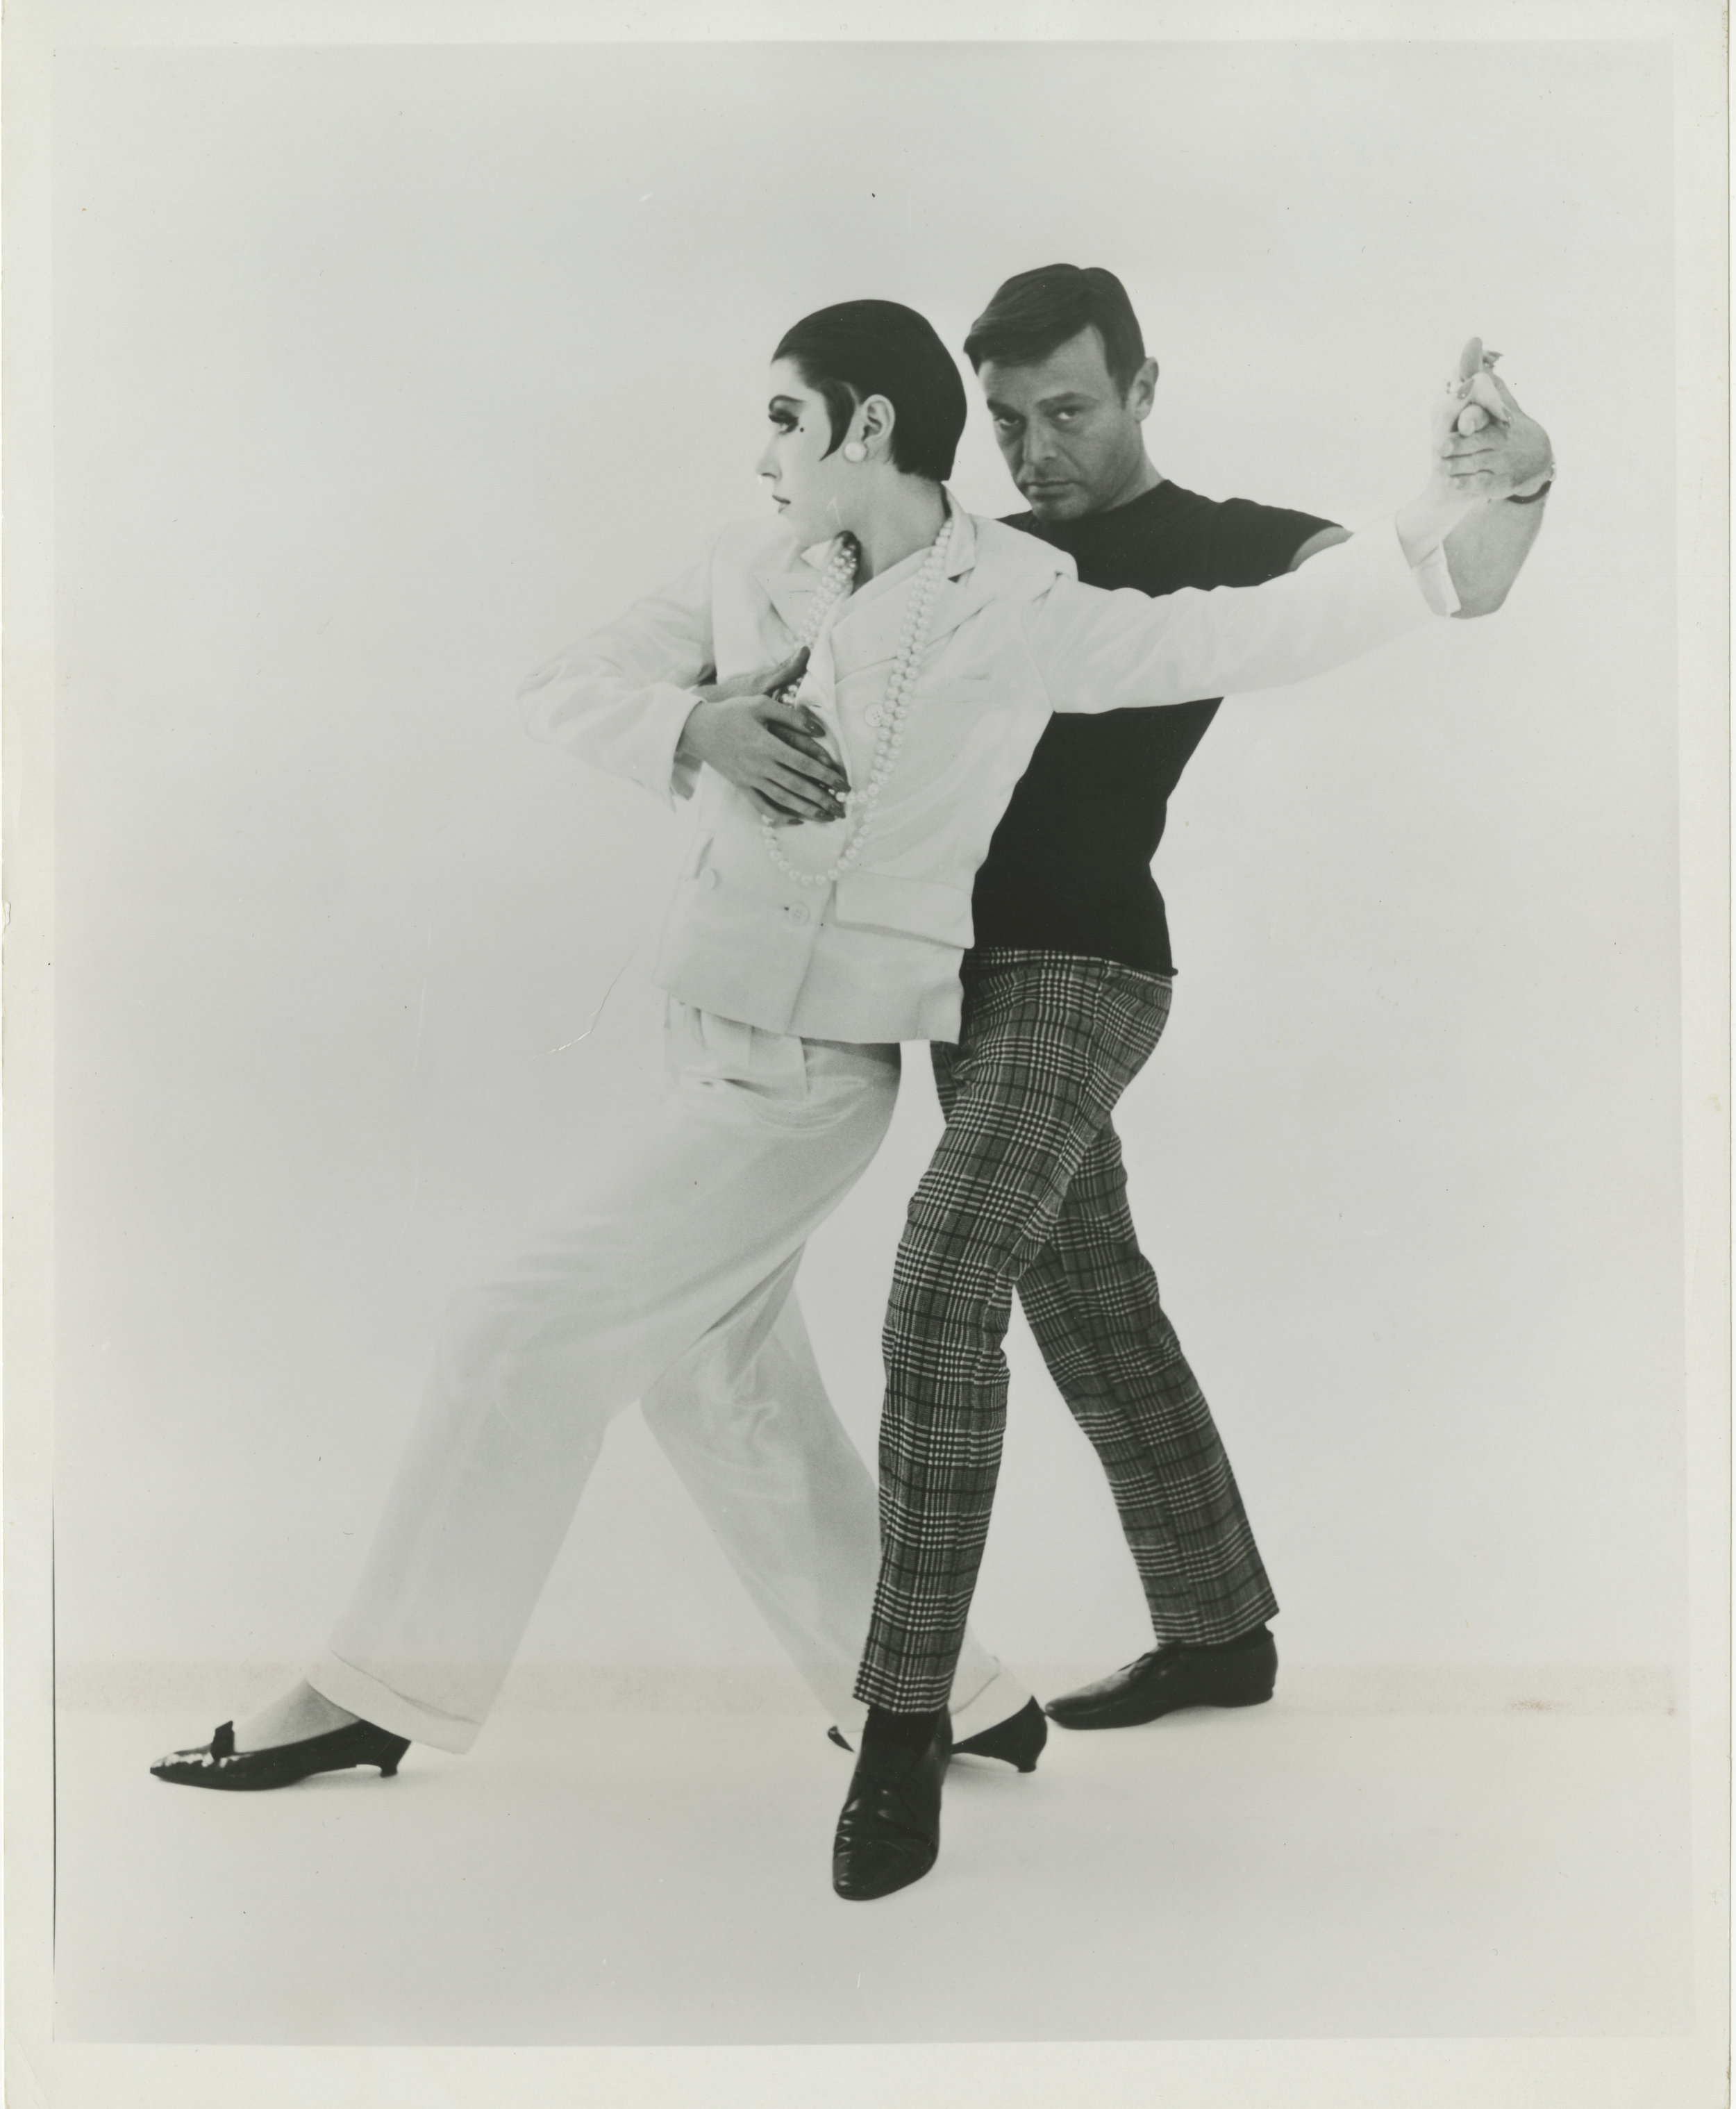 UCLA_Claxton_Gernreich and Moffitt Dancing.jpg